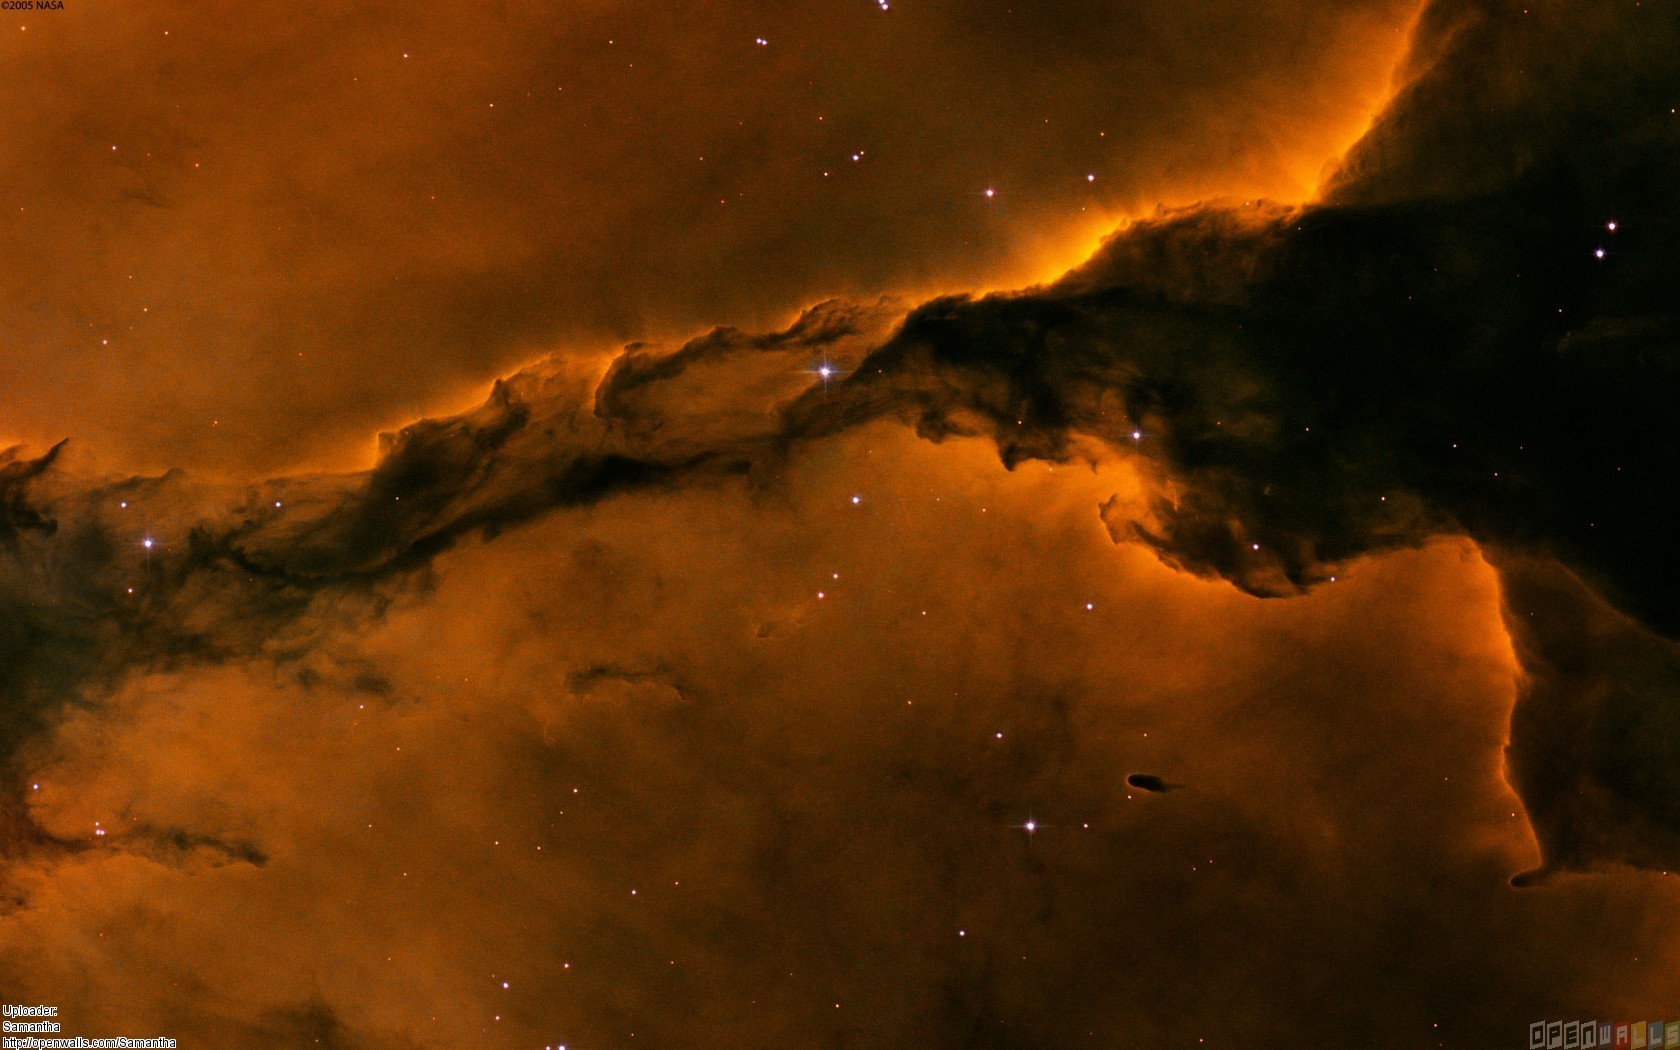 Stellar Spire In The Eagle Nebula Wallpaper Open Walls